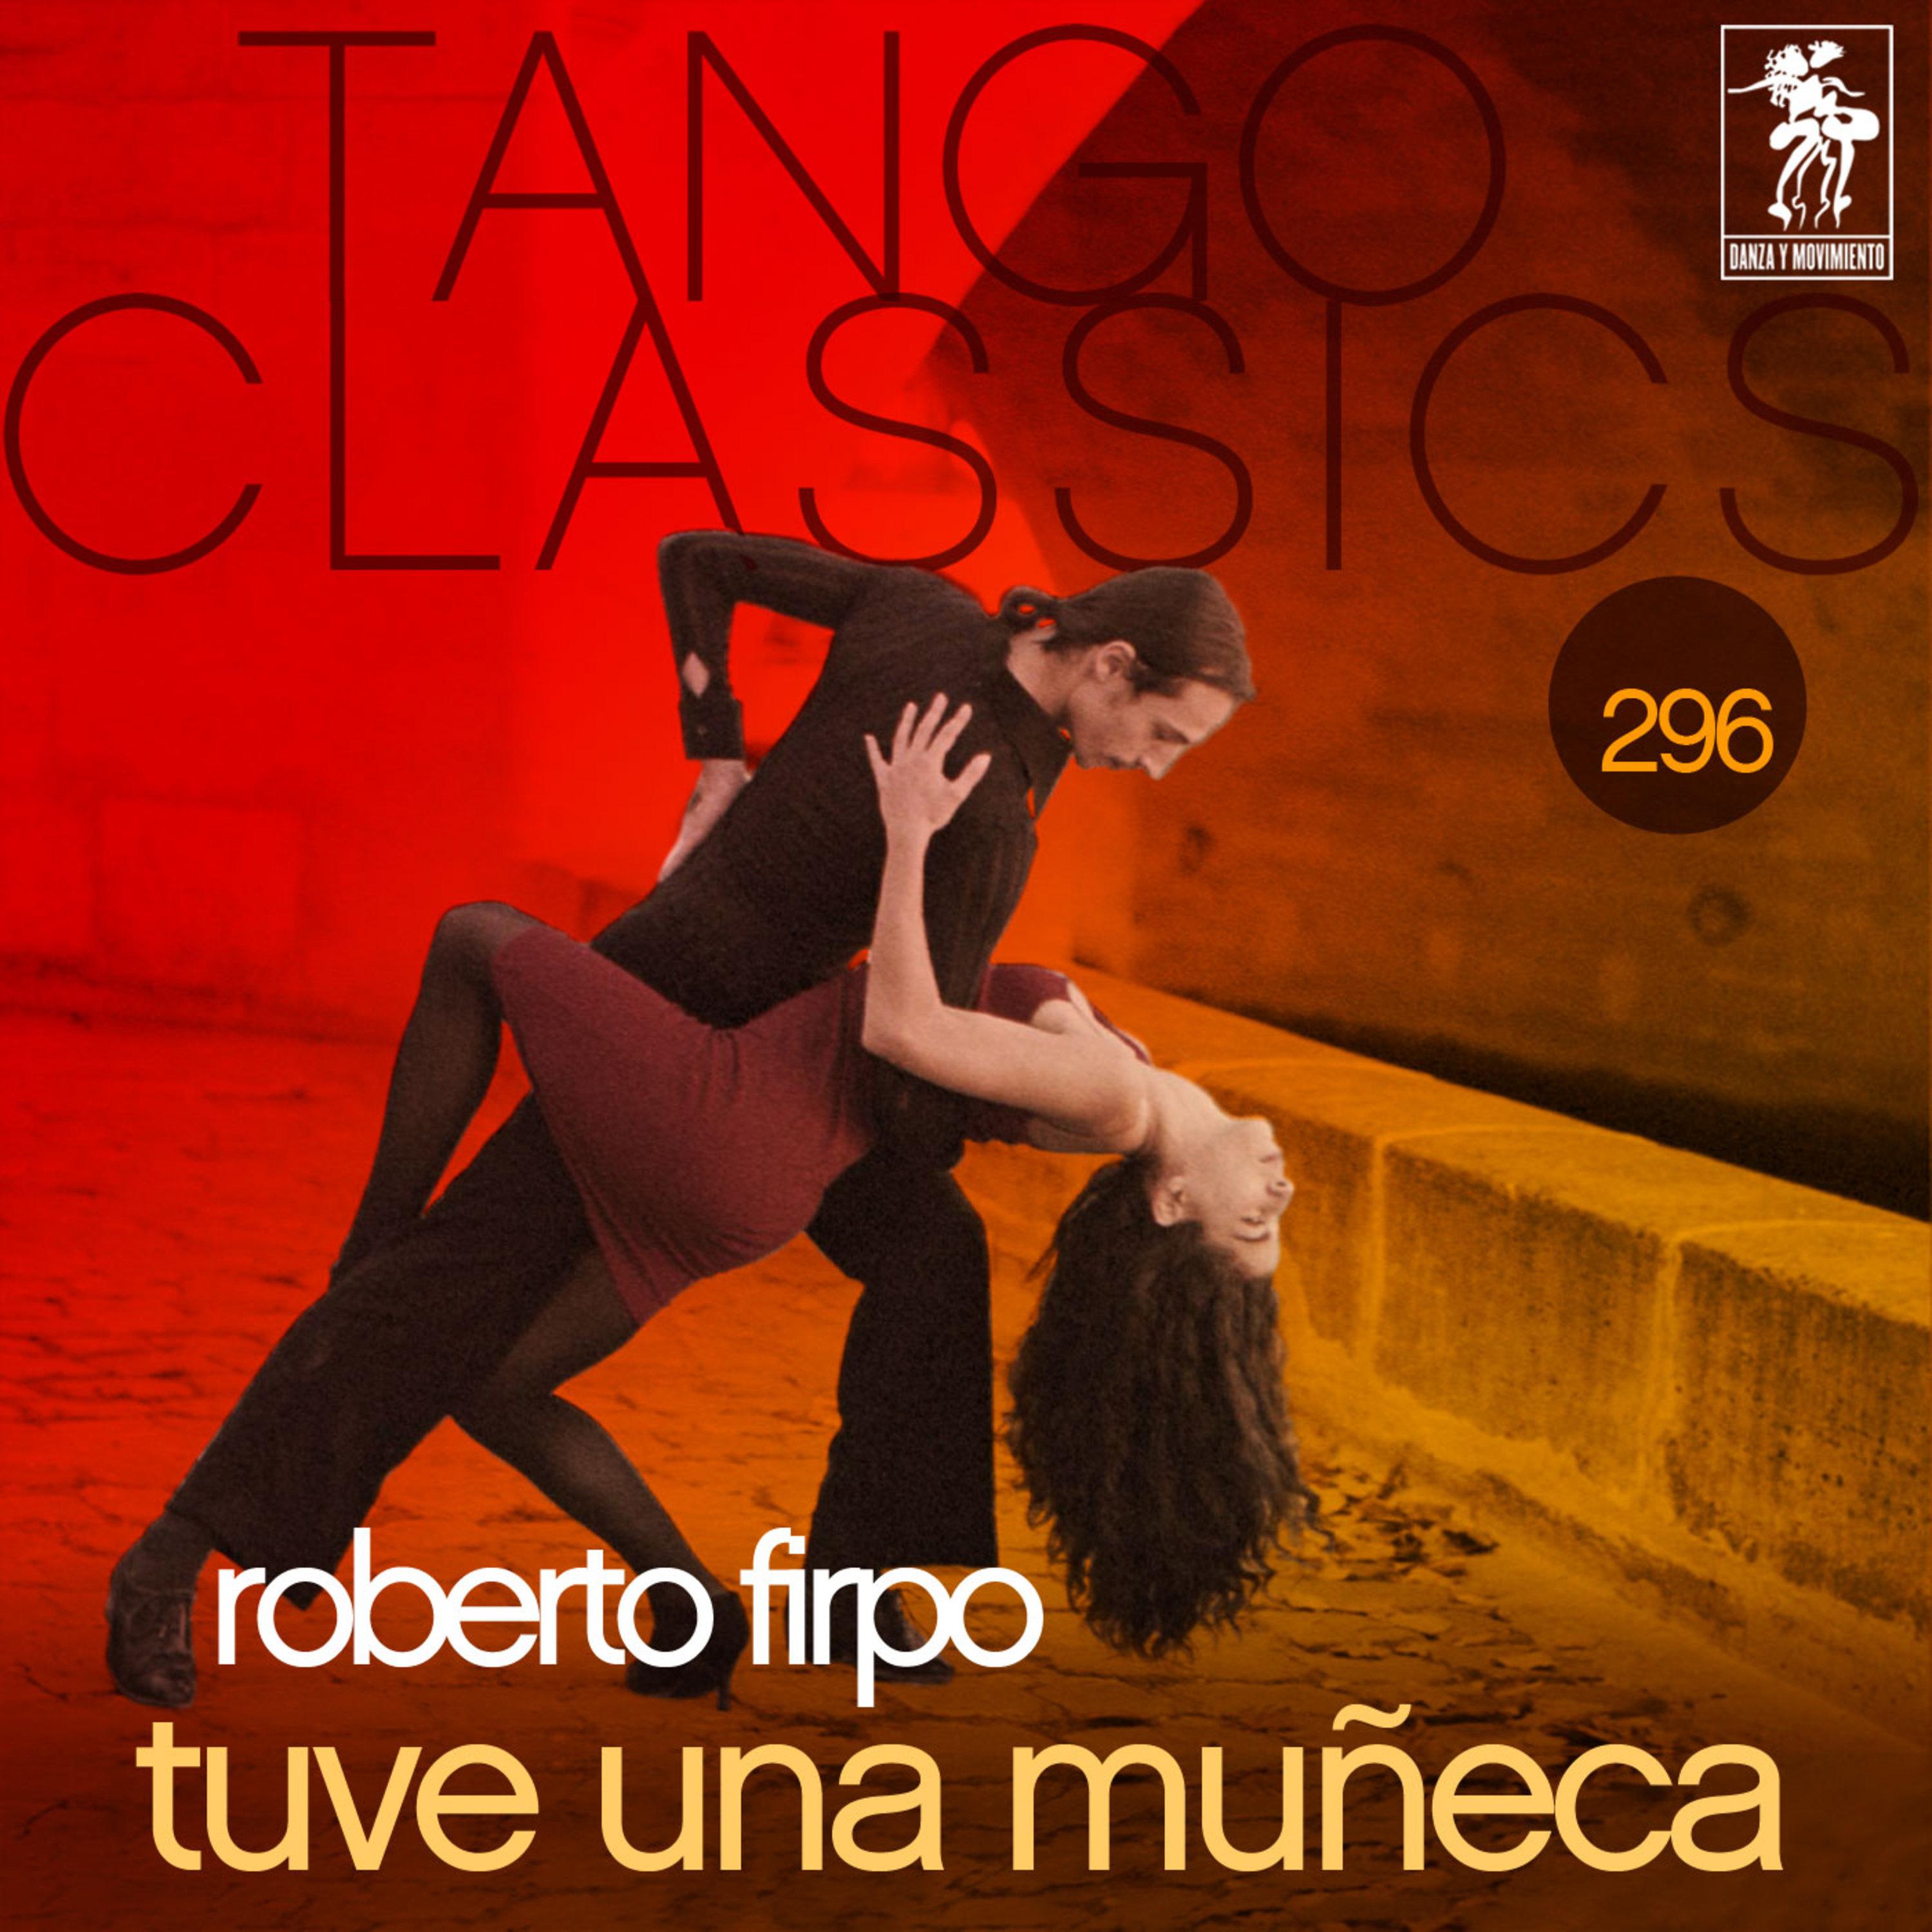 Tango Classics 296: Tuve una Mu eca